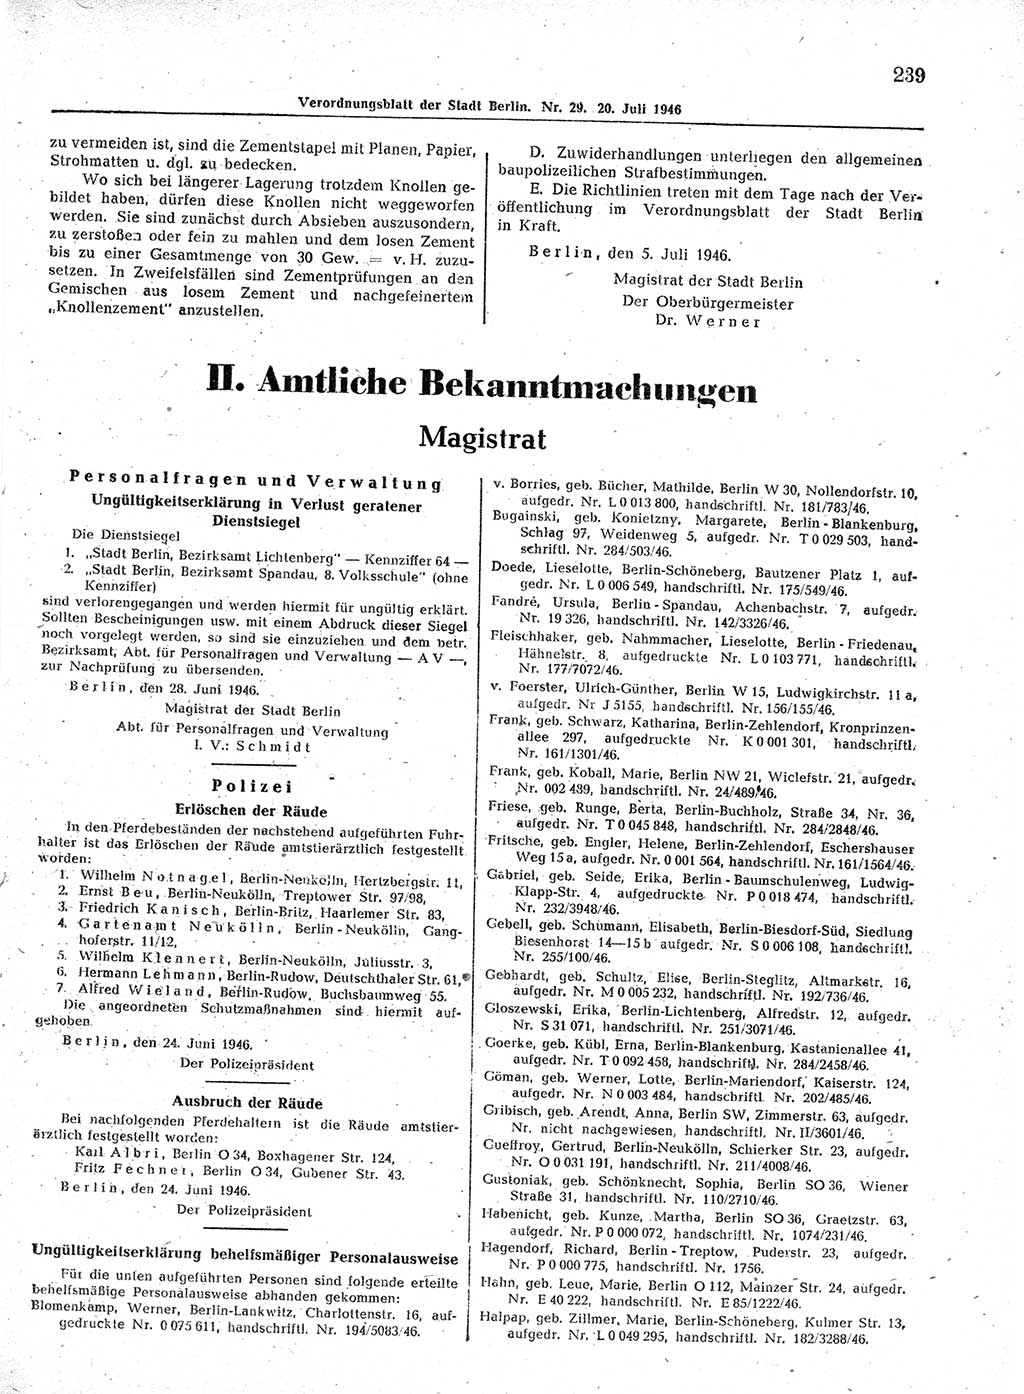 Verordnungsblatt (VOBl.) der Stadt Berlin, für Groß-Berlin 1946, Seite 239 (VOBl. Bln. 1946, S. 239)